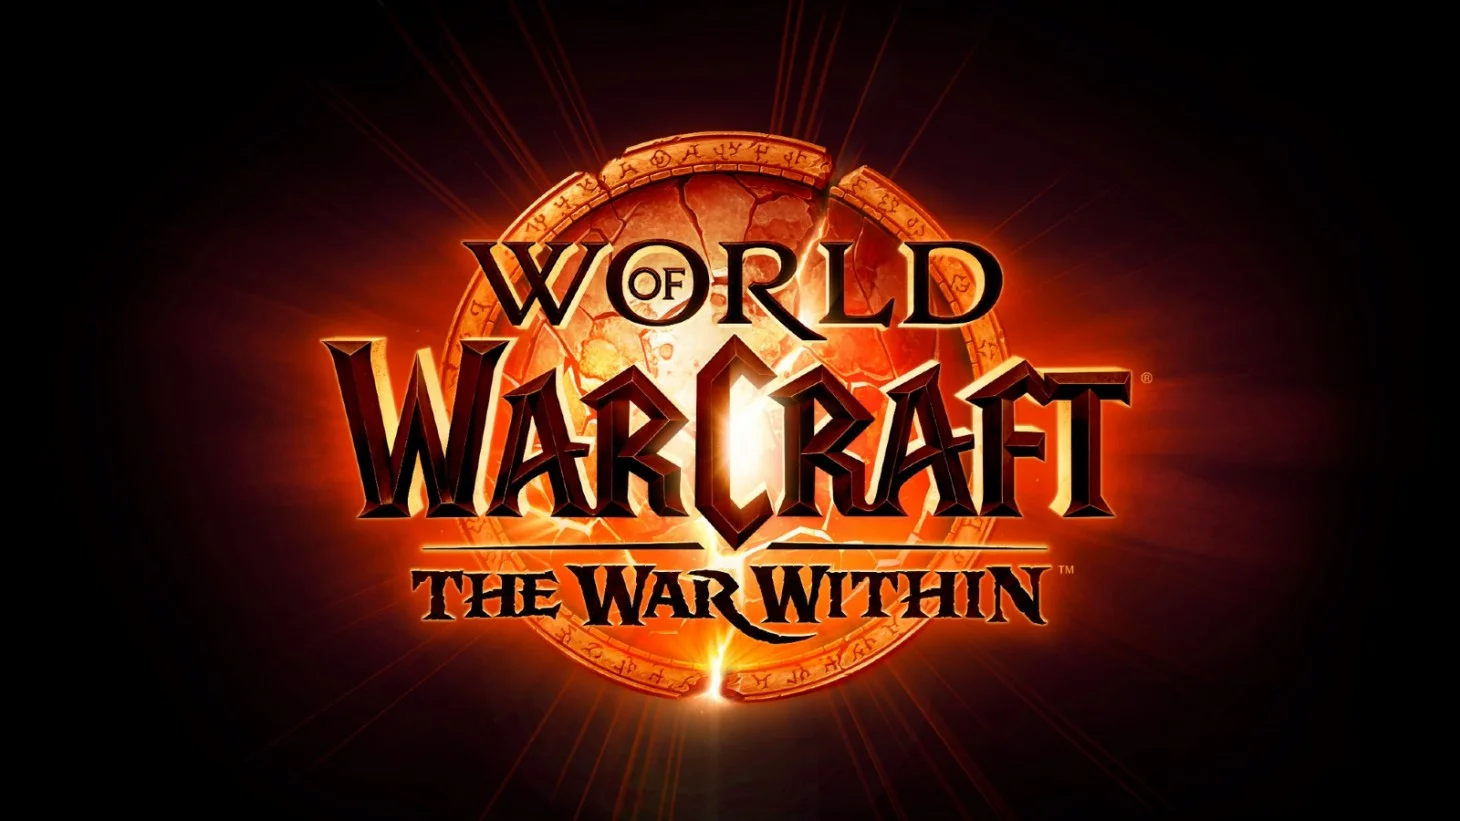 Blizzard hat einen neuen Trailer für World of Warcraft veröffentlicht: The War Within veröffentlicht, in dem das Veröffentlichungsdatum des DLC bekannt gegeben wurde - 26. August